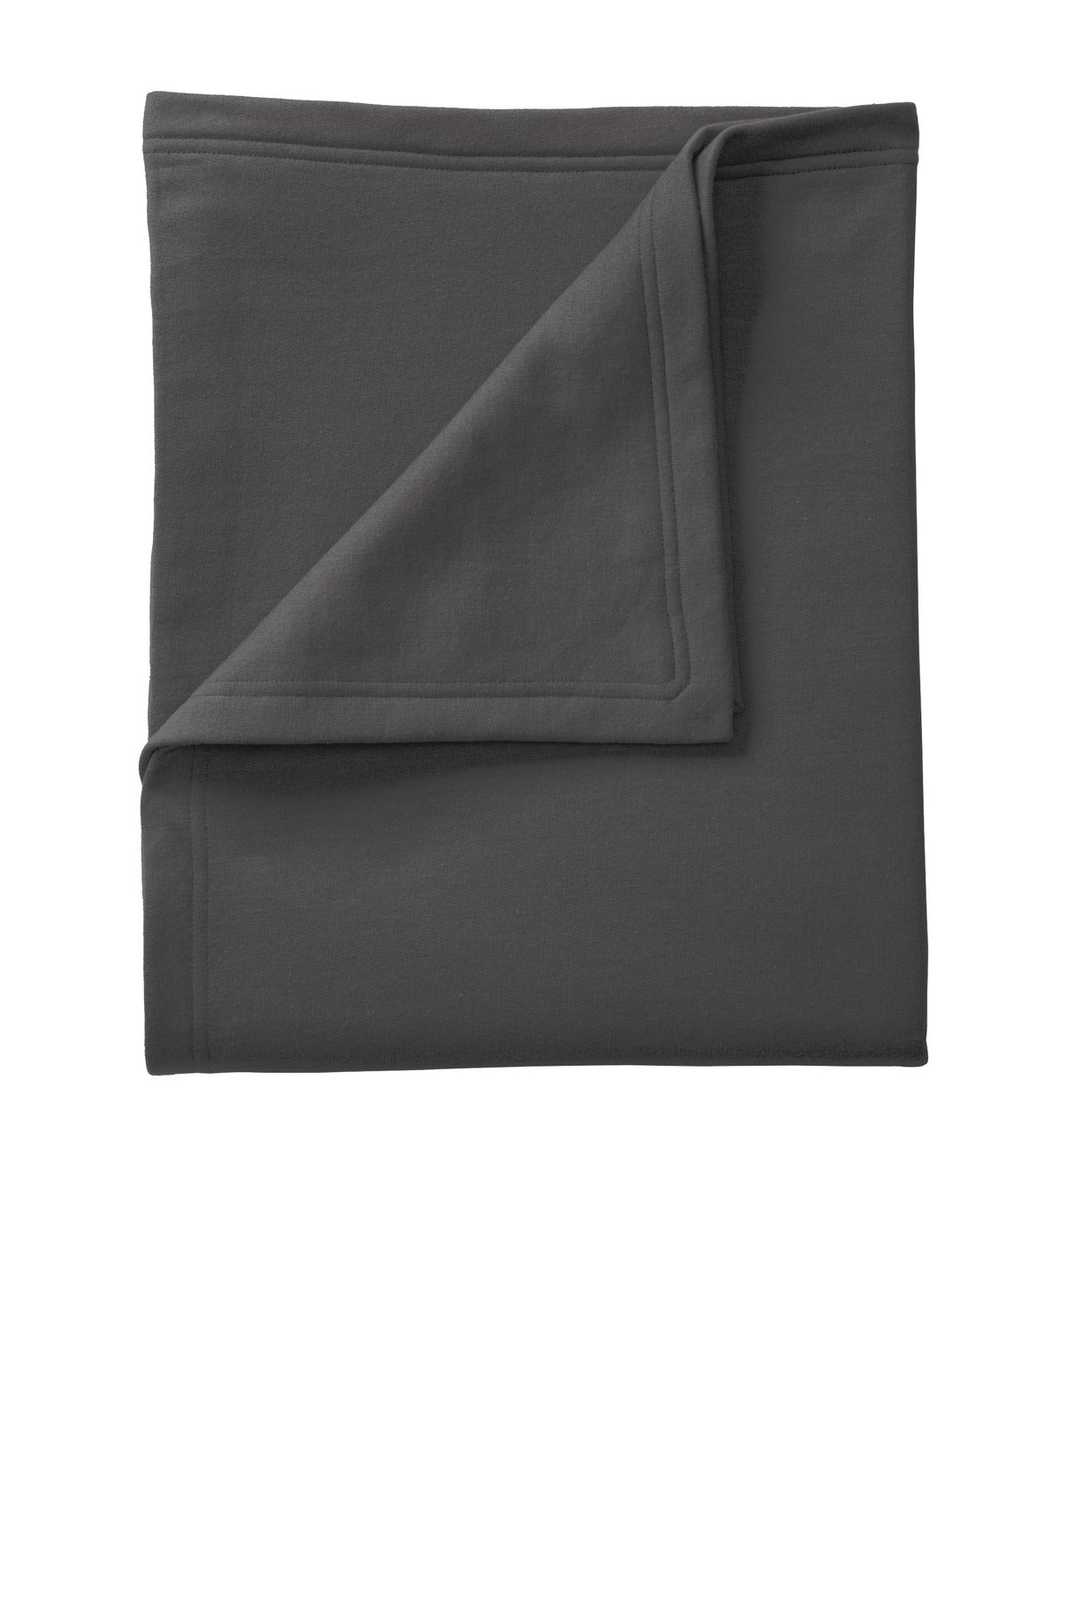 Port &amp; Company BP78 Core Fleece Sweatshirt Blanket - Charcoal - HIT a Double - 1